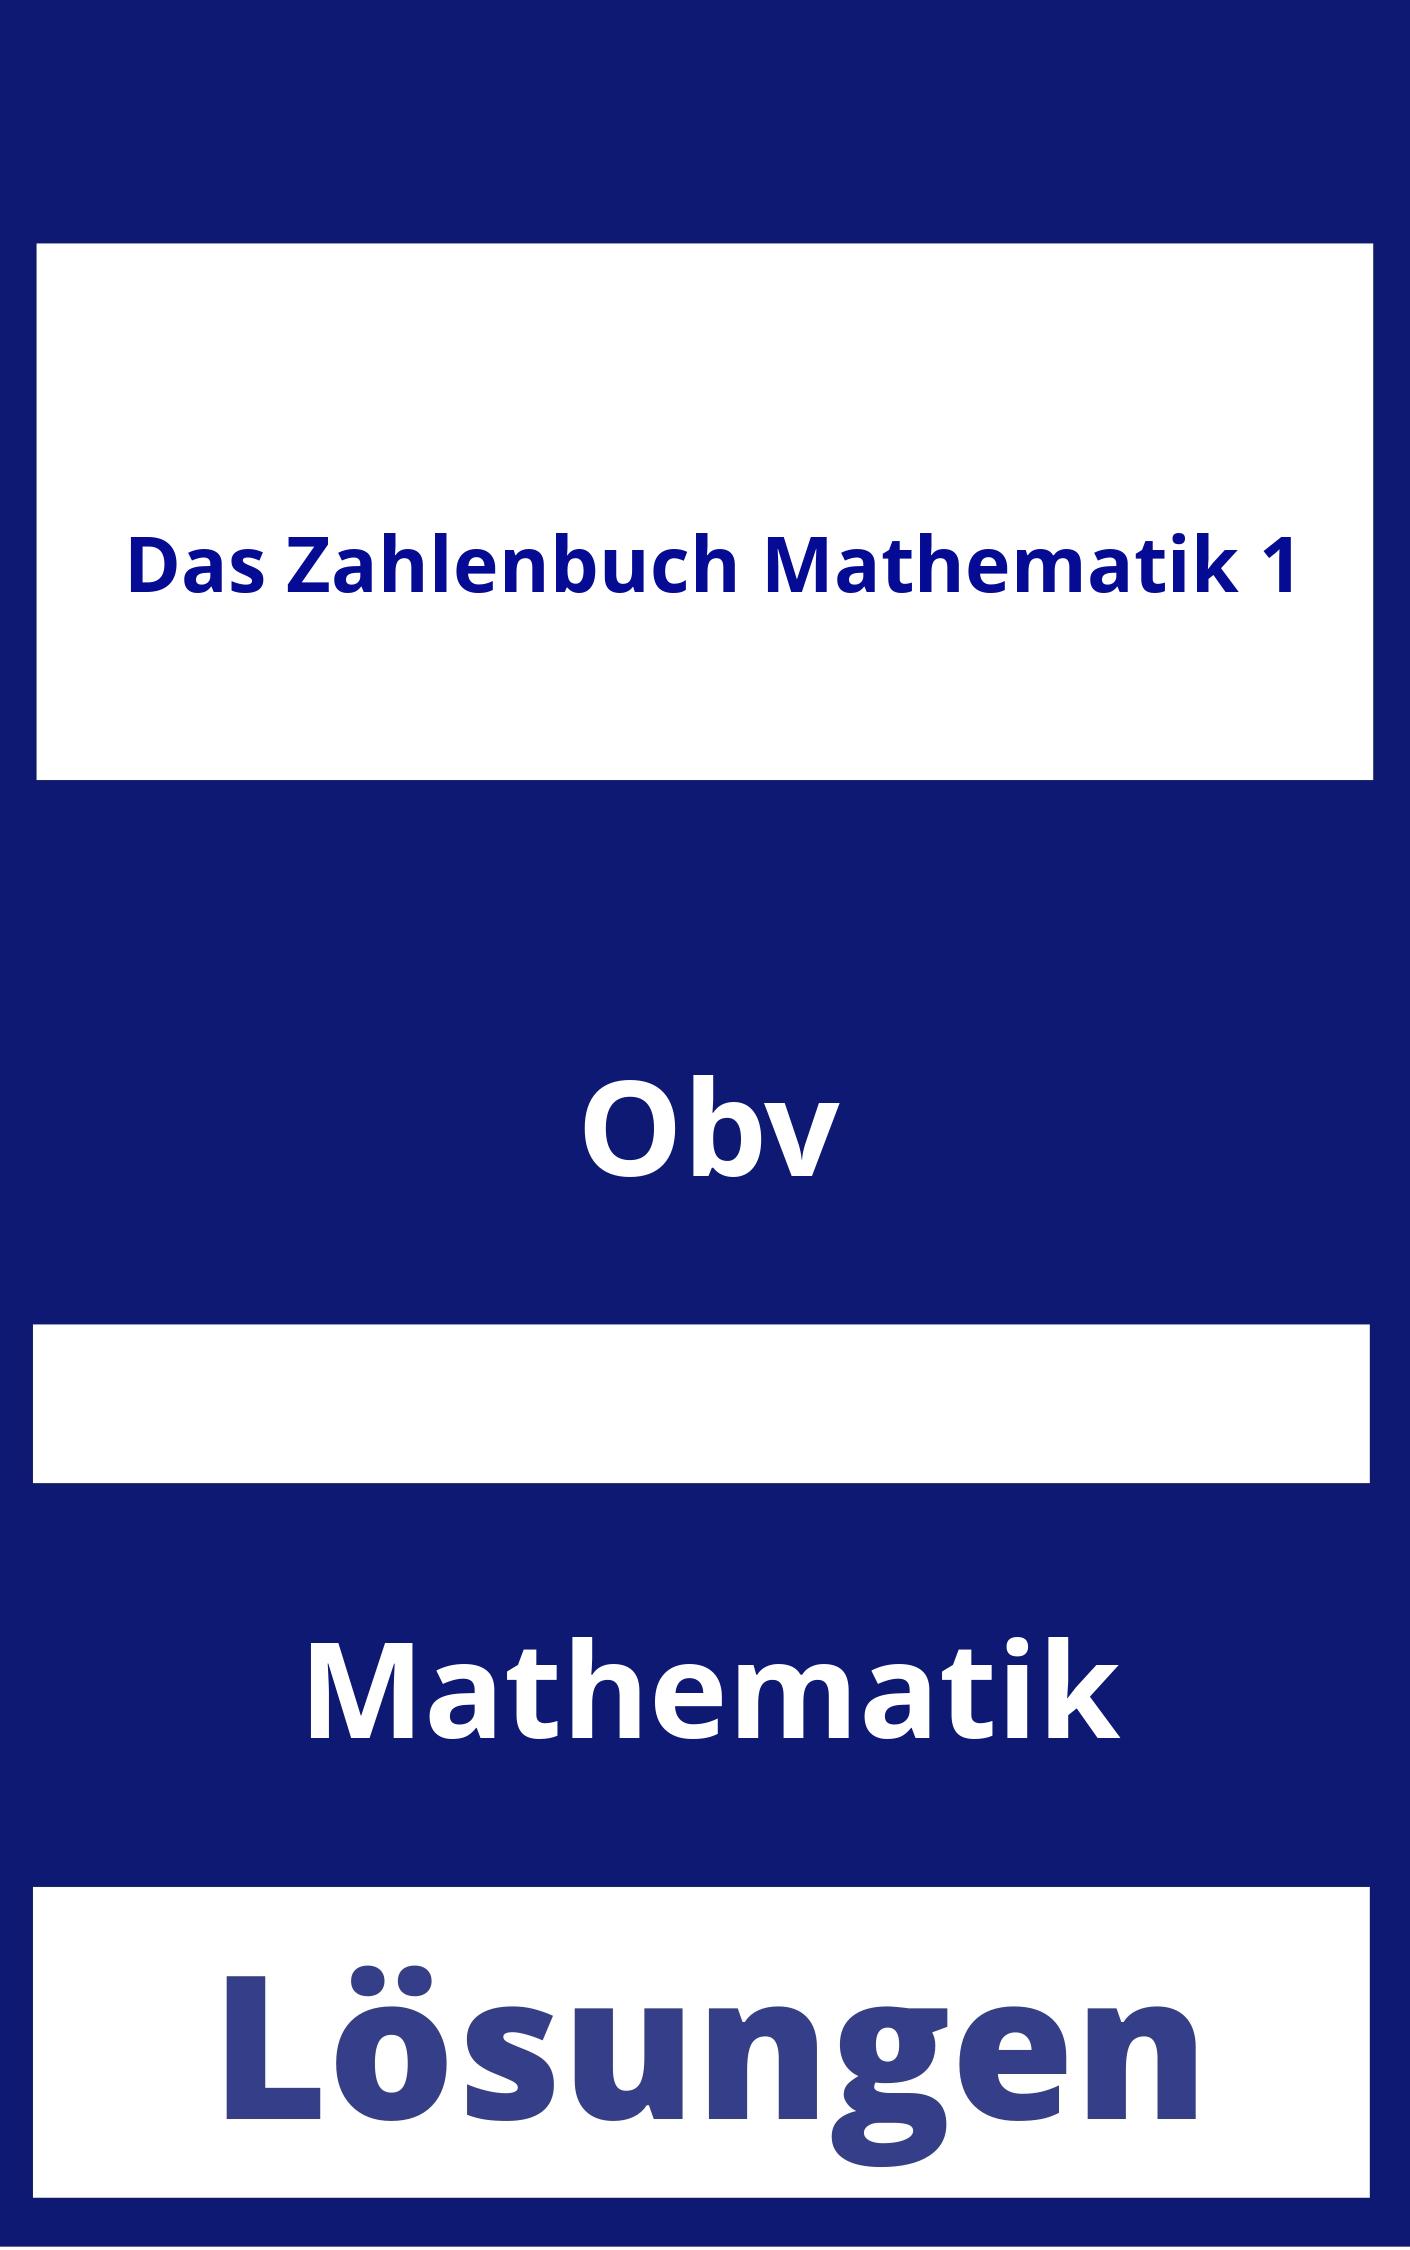 Das Zahlenbuch Mathematik 1